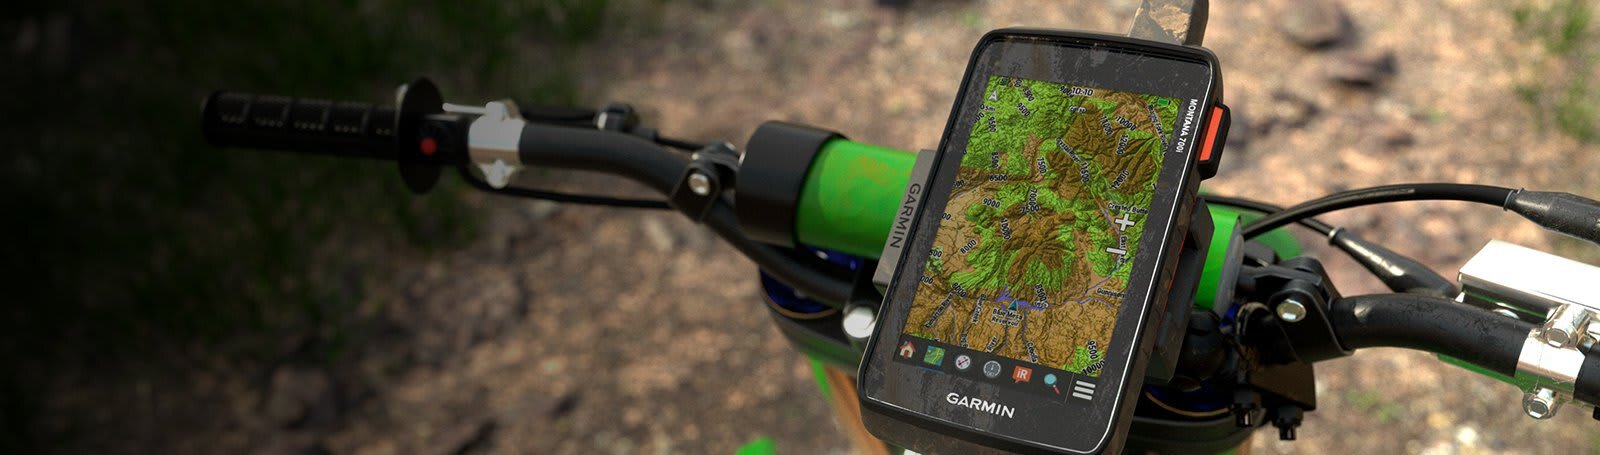 Quel est le meilleur GPS pour randonnée à choisir en 2022 ?